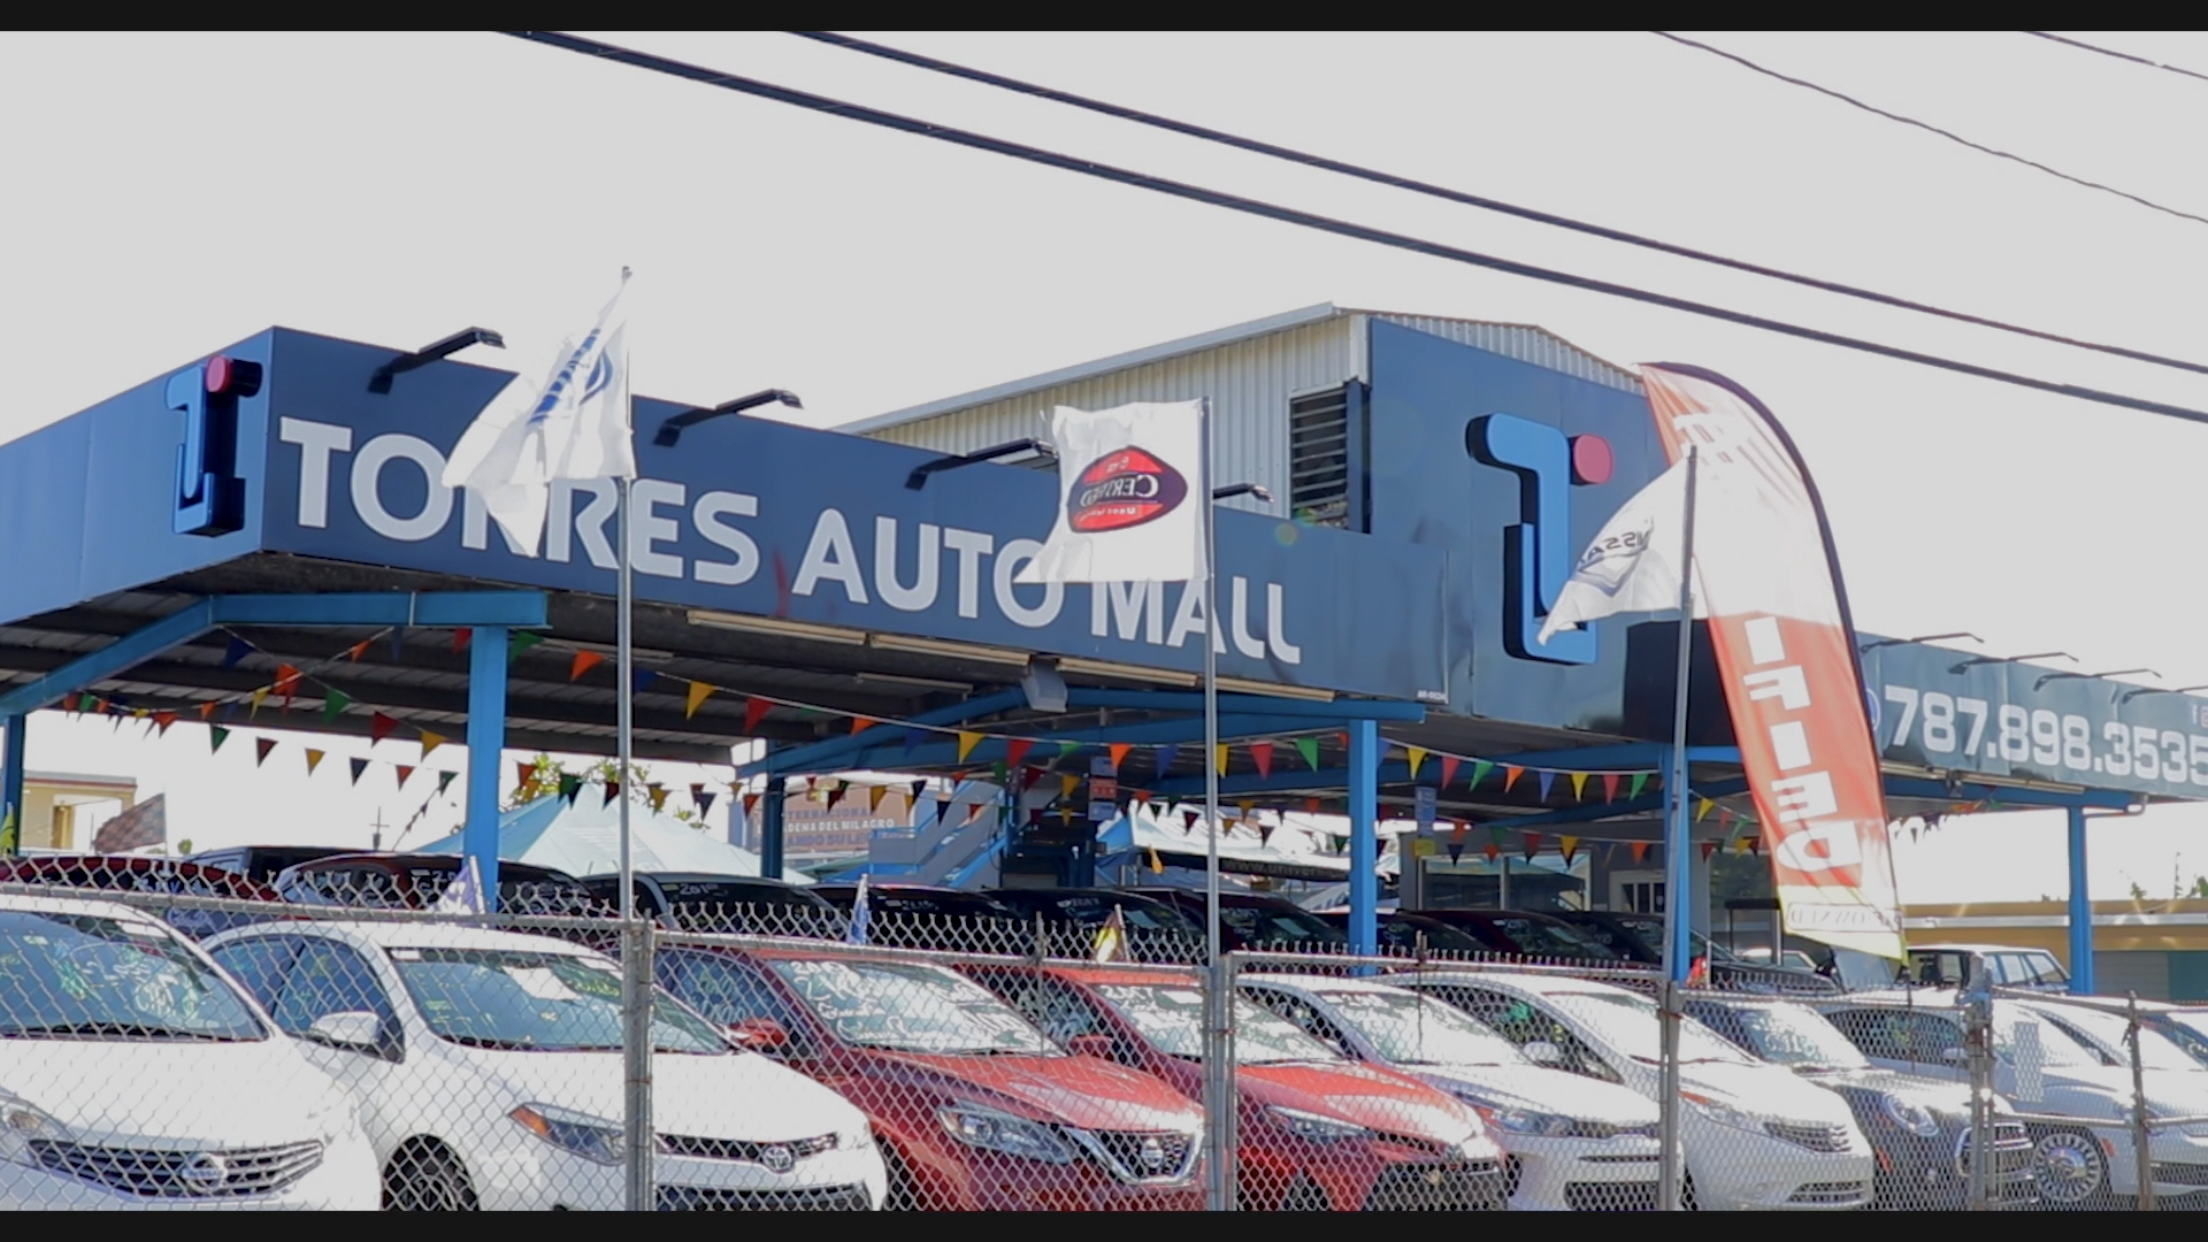 Del Norte repentino tranquilo Torres Auto Mall – El Dealer de las Unidades Certificadas